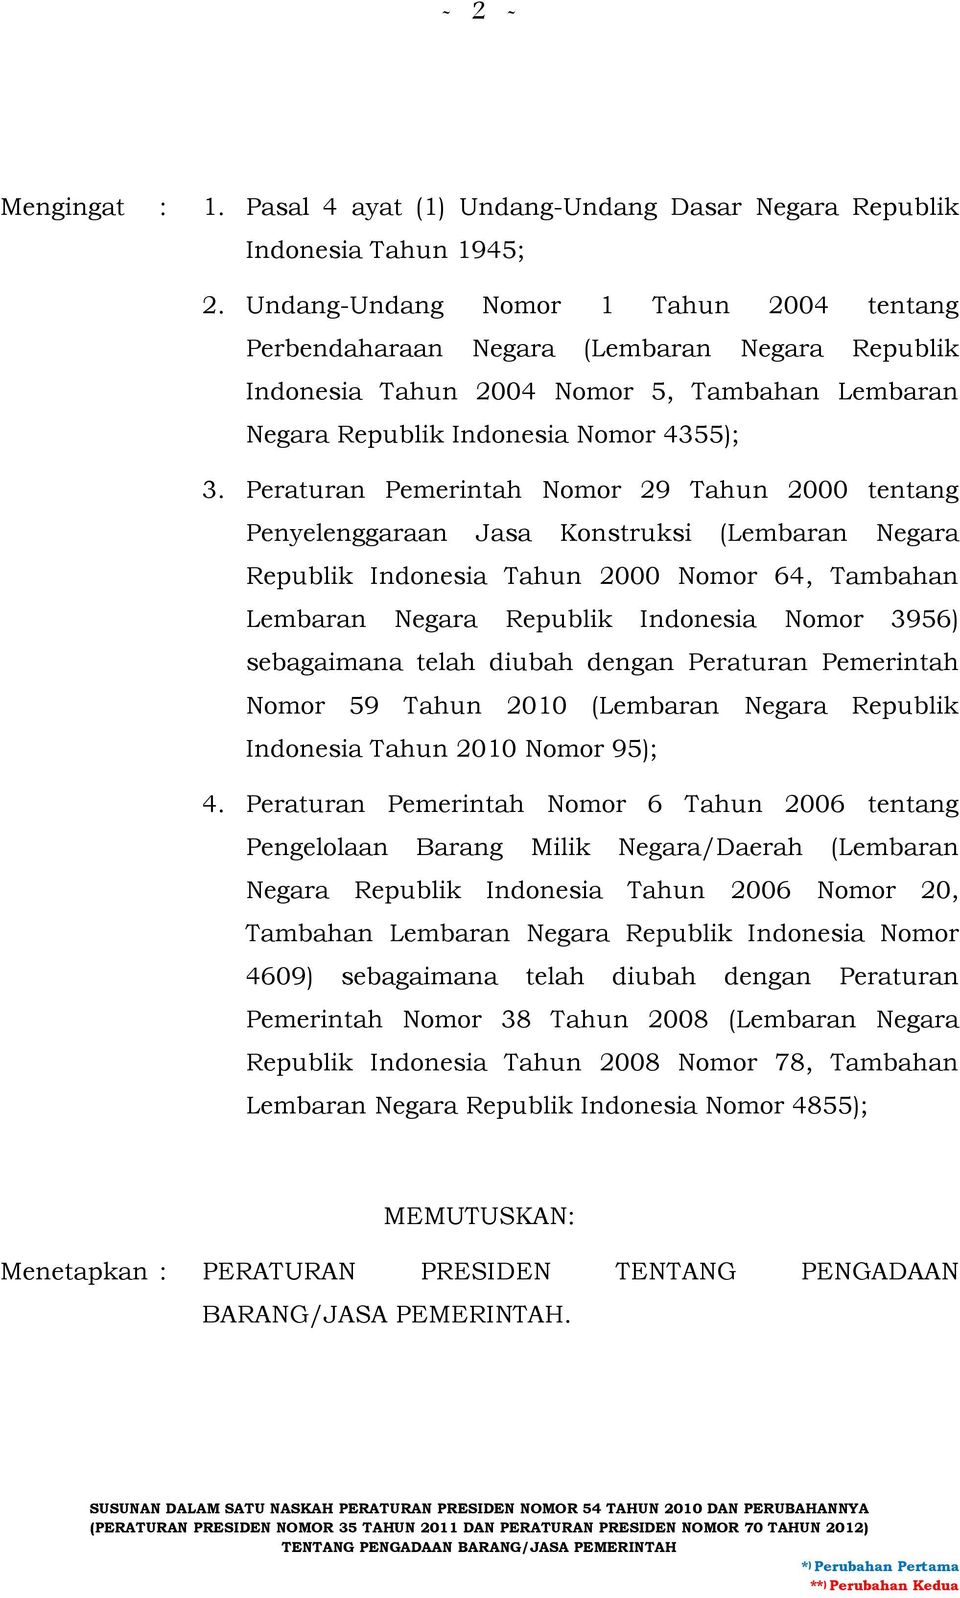 Peraturan Pemerintah Nomor 29 Tahun 2000 tentang Penyelenggaraan Jasa Konstruksi (Lembaran Negara Republik Indonesia Tahun 2000 Nomor 64, Tambahan Lembaran Negara Republik Indonesia Nomor 3956)